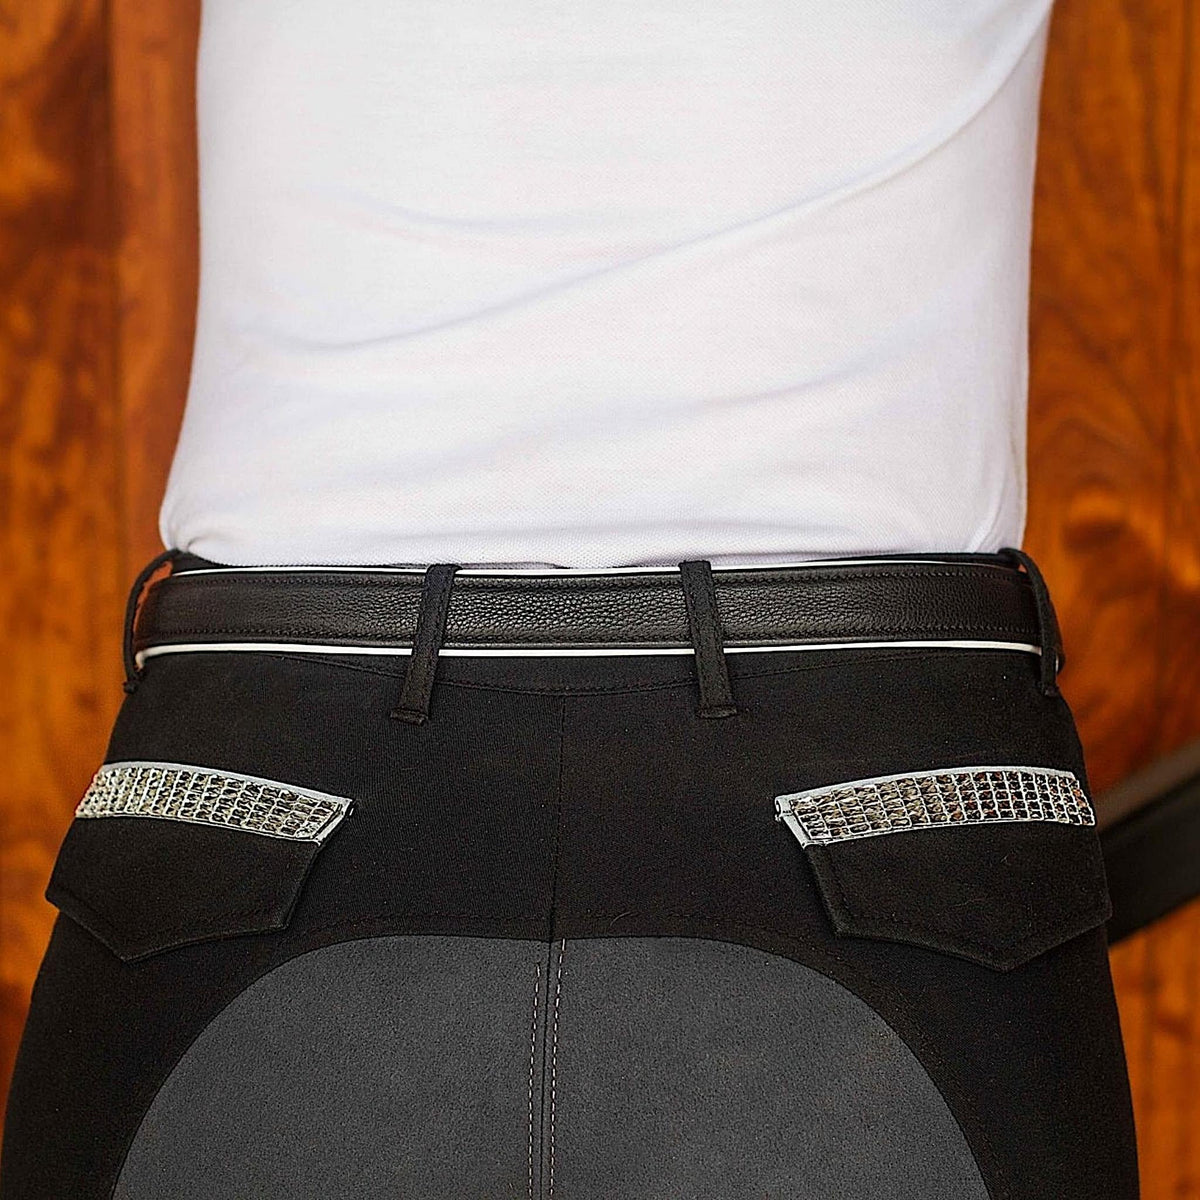 Black leather belt with white padding visible on edges, on black jodhpurs.